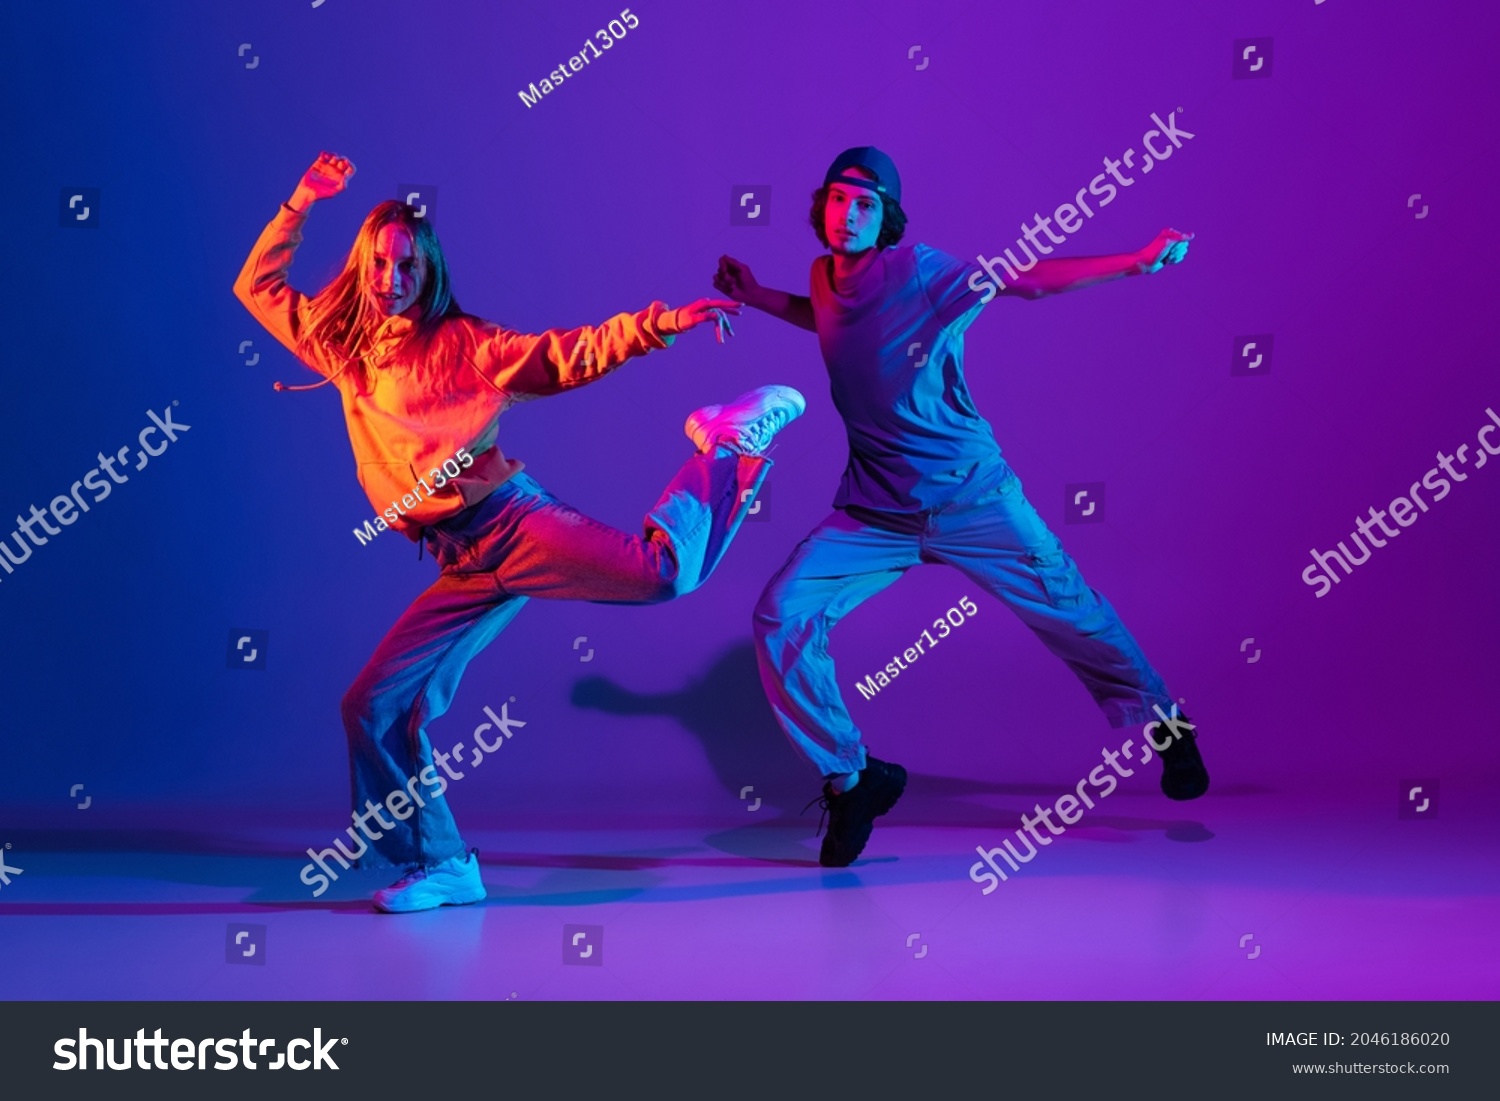 Stilvolle Mann und Frau tanzen Hip Hop in Casual Sport Jugendkleidung auf Farbverlauf-violettem Hintergrund in der Tanzhalle in Neonlicht. Jugendkultur, Hip Hop, Bewegung, Stil und Mode, Action. – Stockfoto